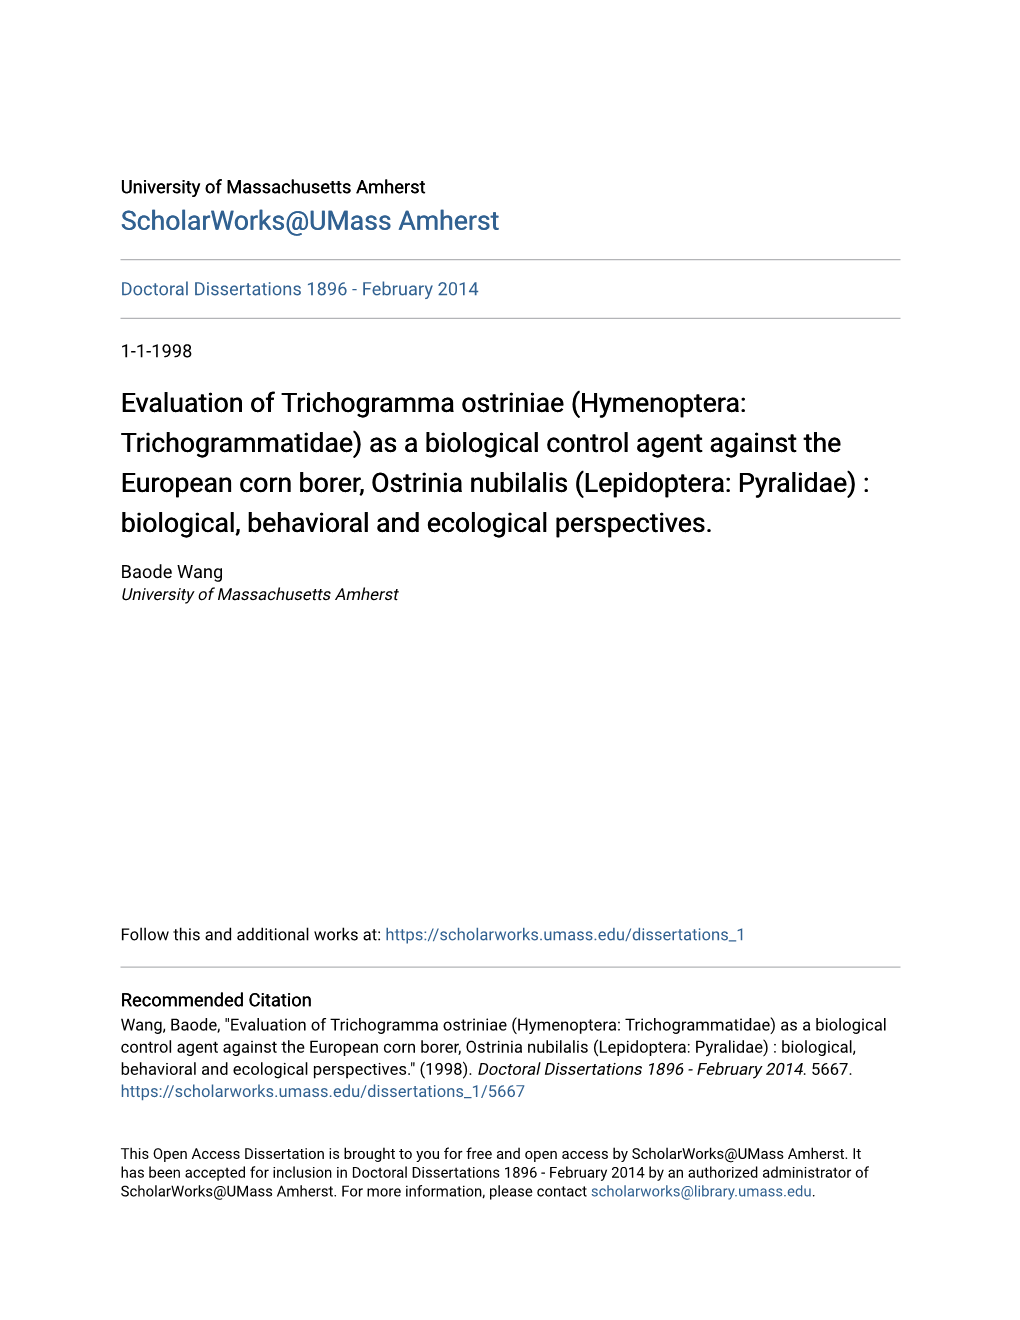 Evaluation of Trichogramma Ostriniae (Hymenoptera: Trichogrammatidae